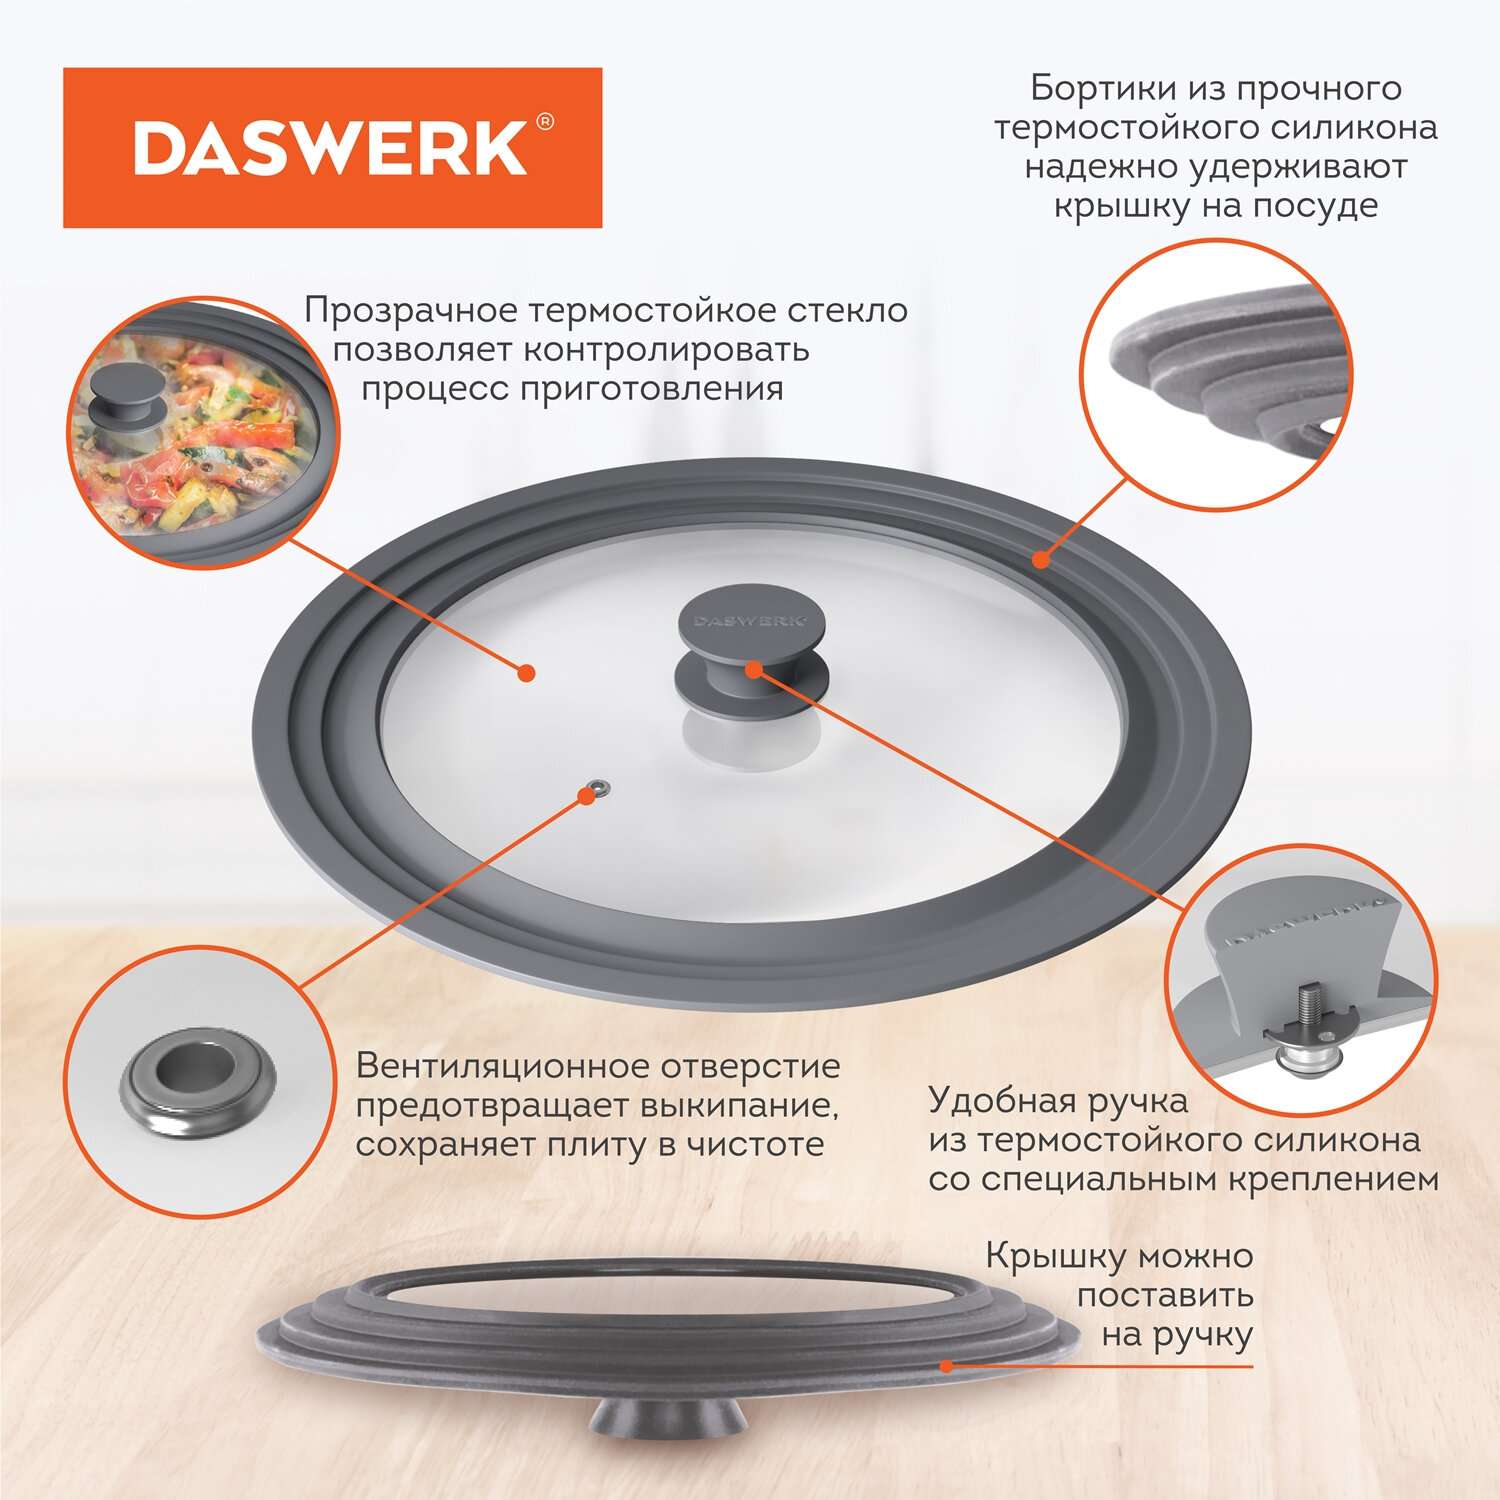 Крышка для сковороды DASWERK кастрюли посуды универсальная 3 размера 24-26-28см - фото 4